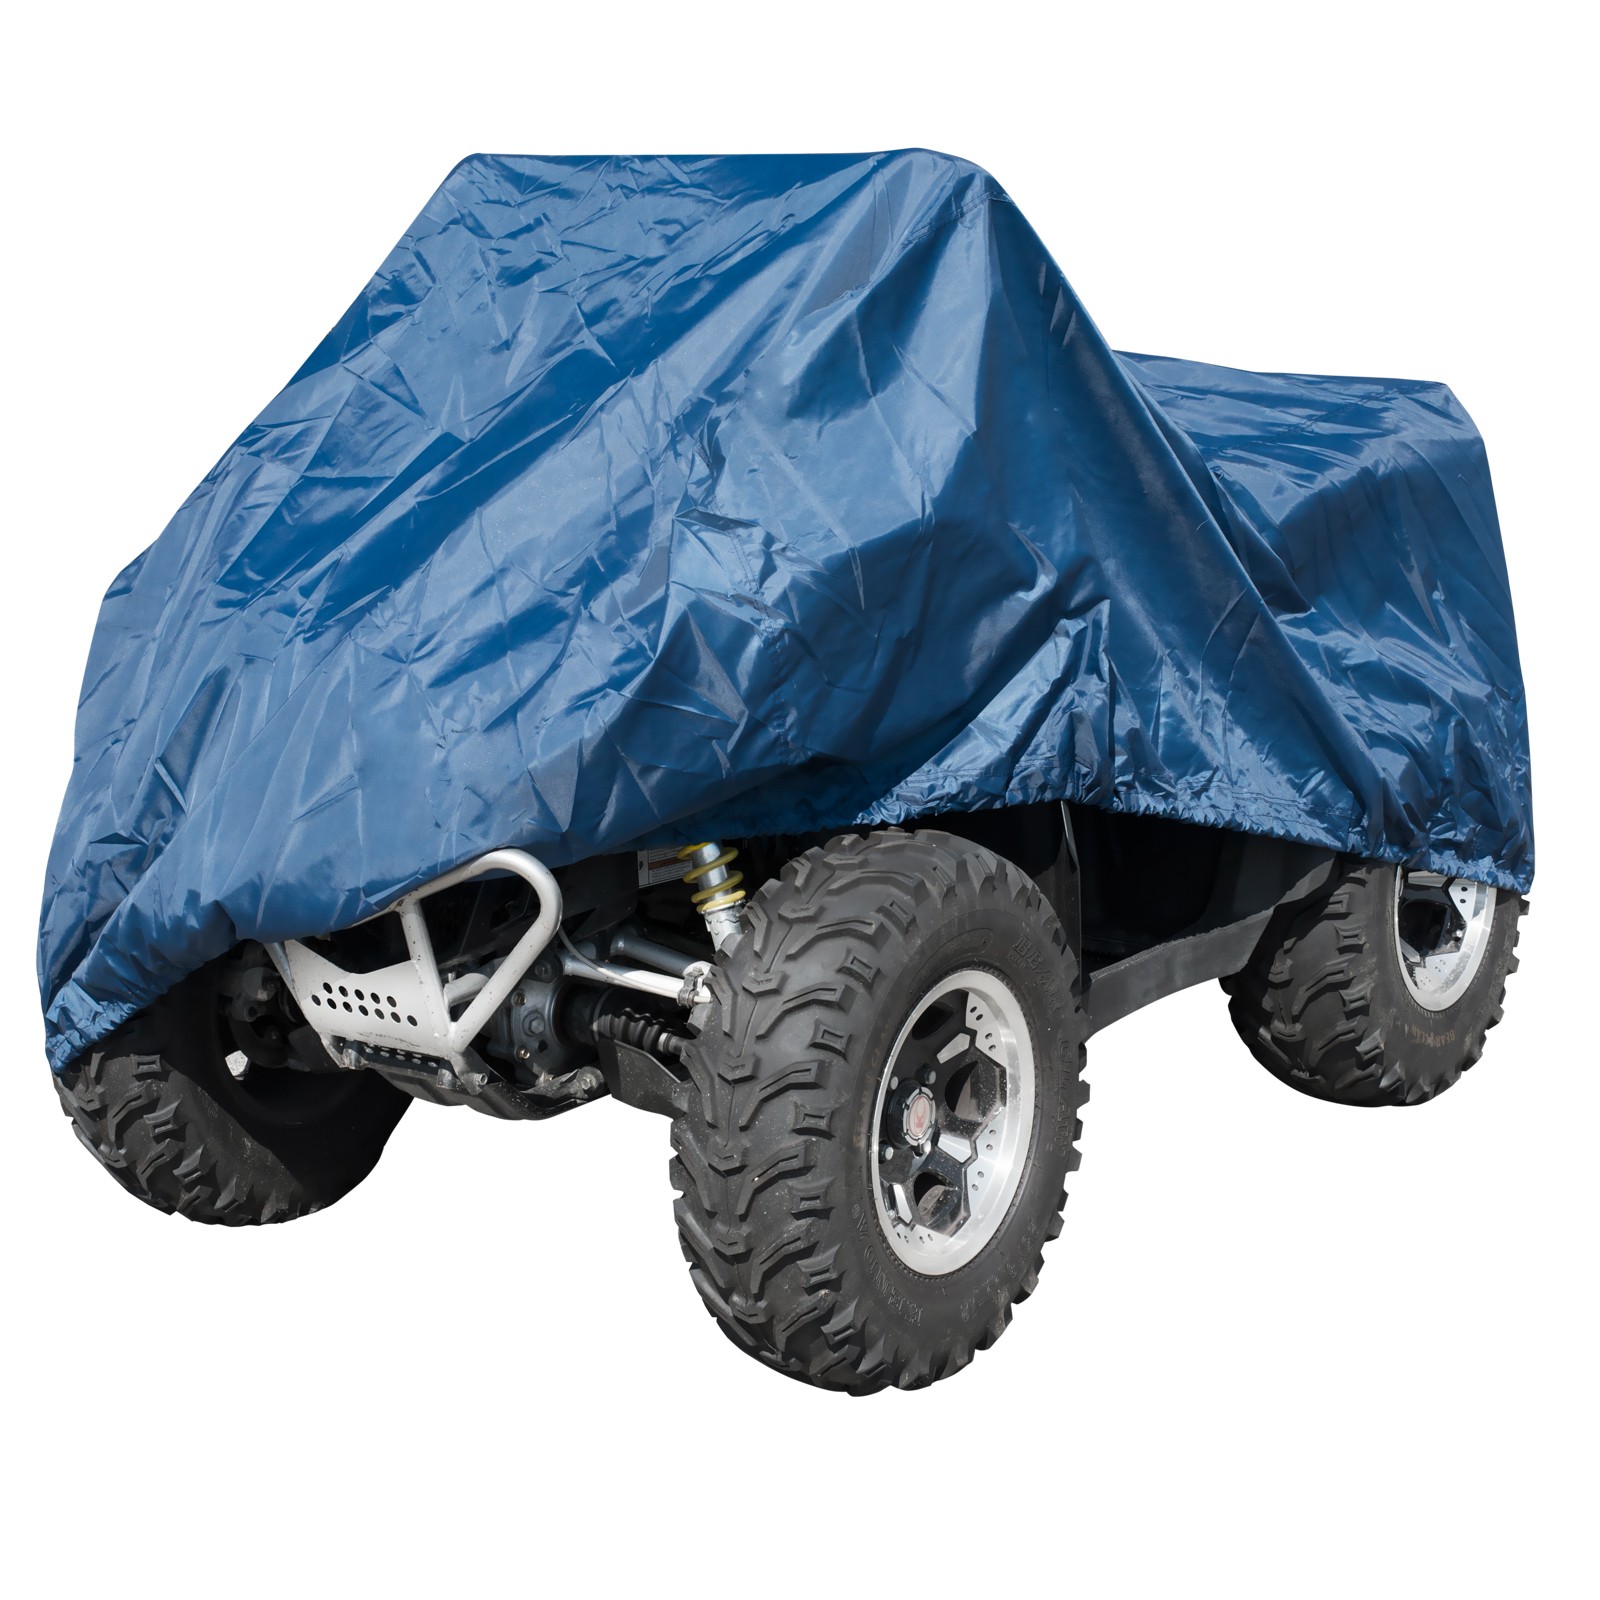 Abbigliamento Moto e Accessori - Telo Copri Moto ATV Quad Naked  Impermeabile PVC Universale Garage Blu